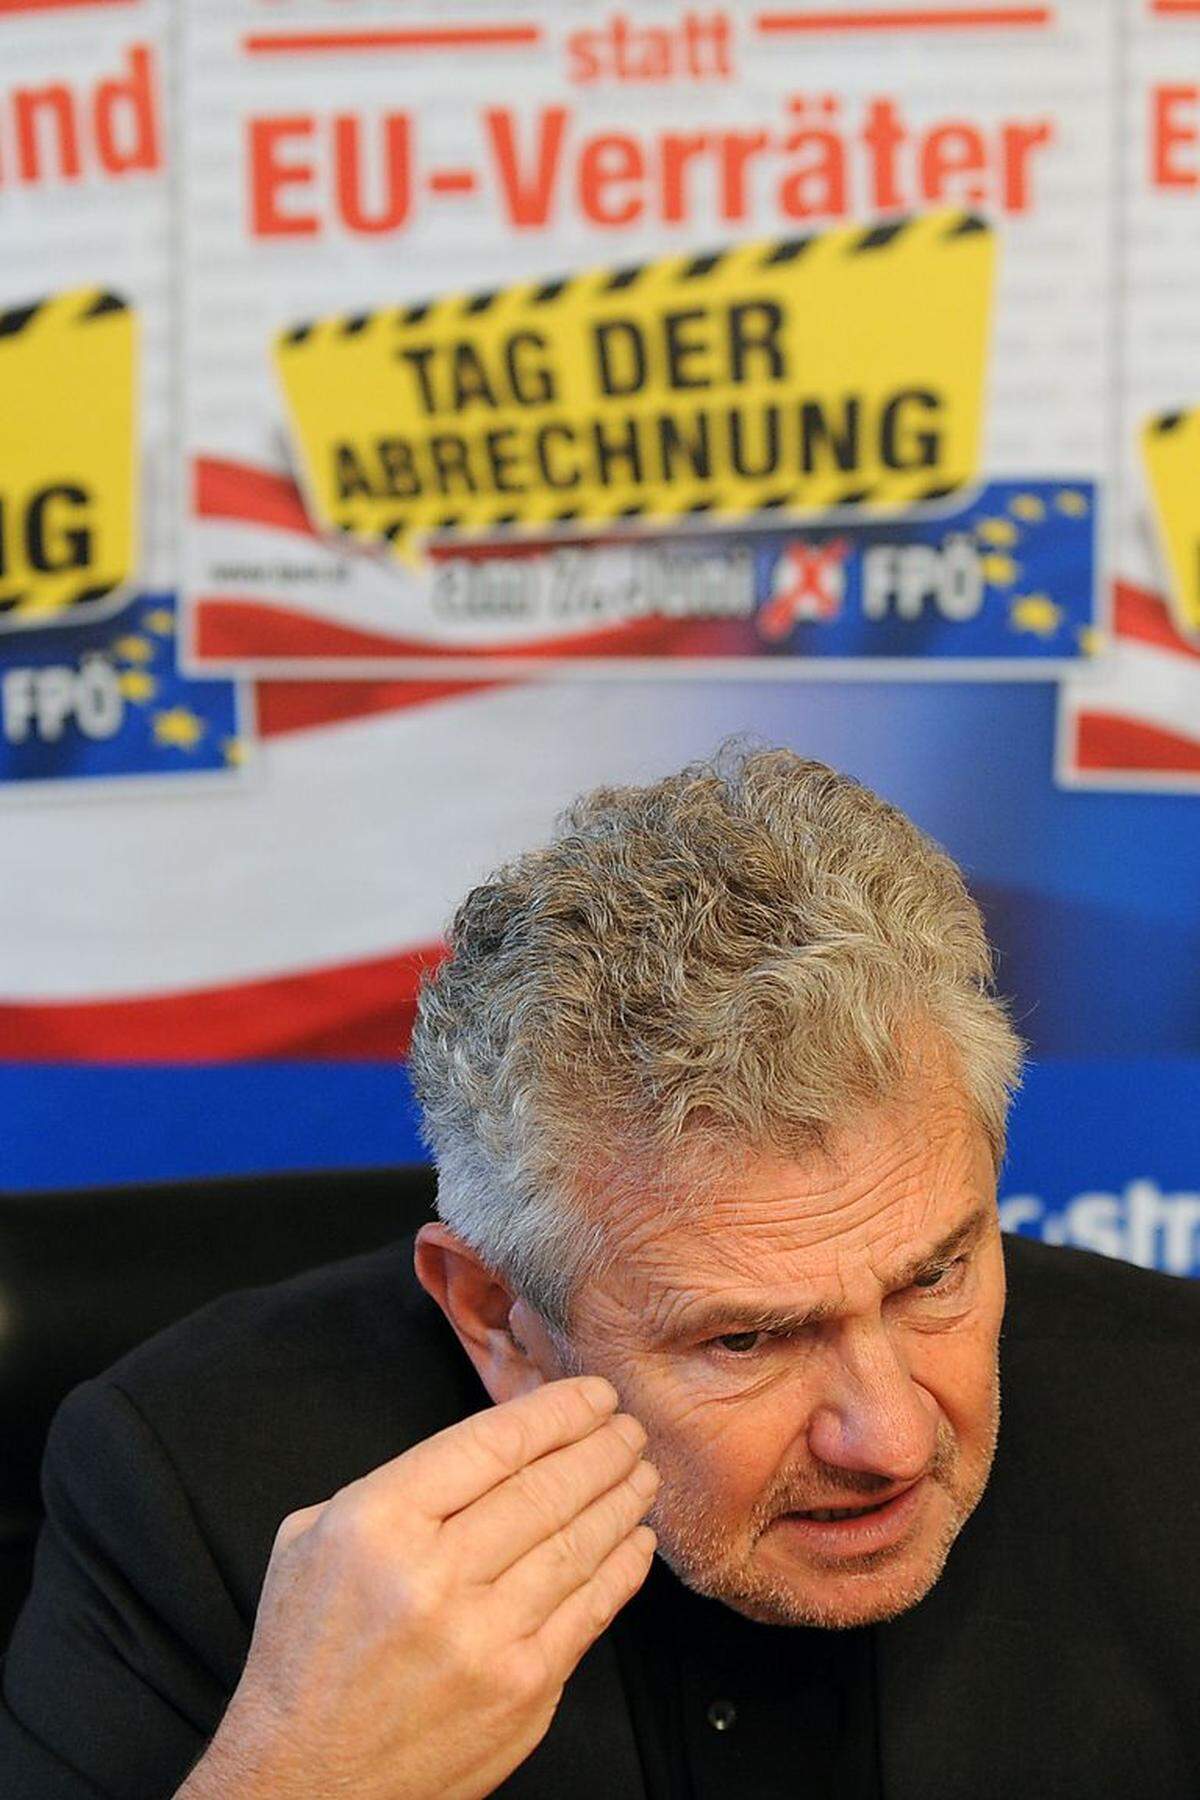 Ebenfalls 2014 nannte der geschäftsführende Parteichef von Niederösterreichs FPÖ Christian Höbart Asylwerber „Erd- und Höhlenmenschen“. In einer Aussage des Abgeordneten Gerhard Deimek fand sich die Zahl „88" – was in Neonazi-Kreisen als Chiffre für „Heil Hitler" verwendet wird. Deimek erklärte, damit nichts zu tun zu haben, die FPÖ ortete einen „bedauerlichen Fehler". Die größten Wellen aber schlug wohl Andreas Mölzer (Bild). Er wurde als FPÖ-Spitzenkandidat für die EU-Wahl abgesetzt, nachdem er erklärt hatte, dass im Vergleich mit der EU „das Dritte Reich wahrscheinlich formlos und liberal" gewesen sei. Weiters müsste sich die EU fragen, ob sie ein „Negerkonglomerat" sei, beherrscht von einer „Bande von Lobbyisten".